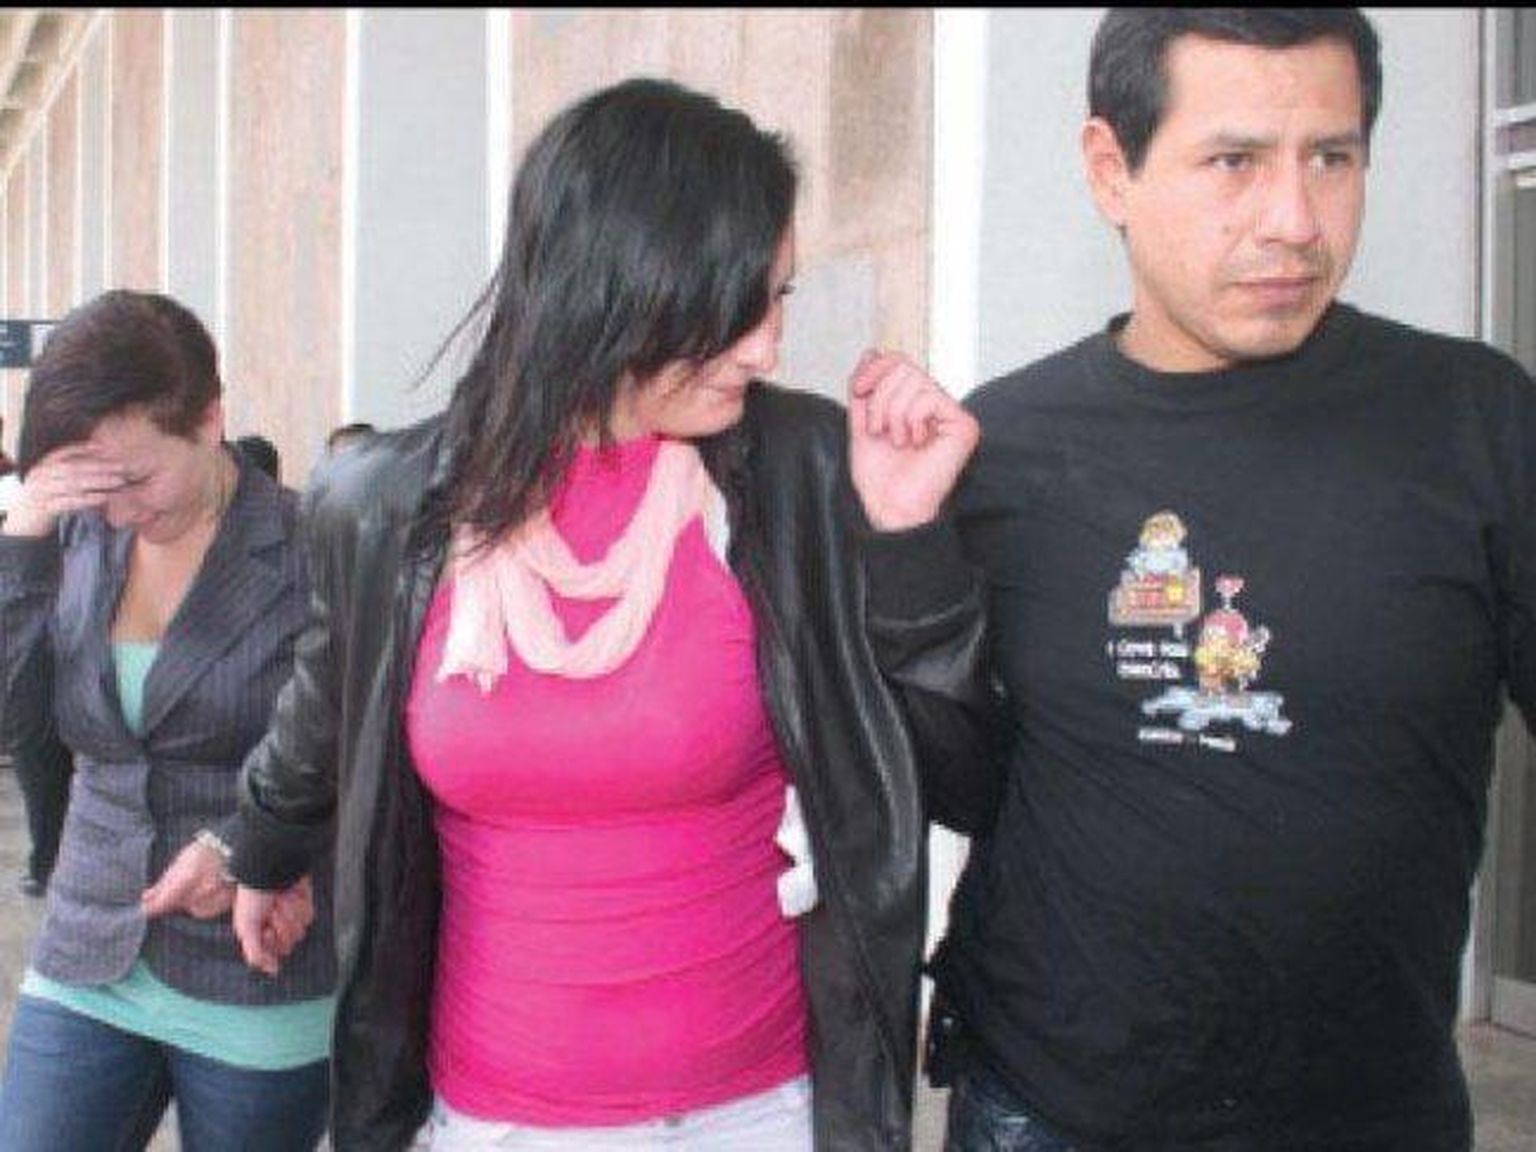 Oktoobris 2013 tabati Peruus 19-aastane Anneli Kolk ja 22-aastane Anne-Maarja Gross, kes üritasid kohvris lennukisse smugeldada kuus kilo kokaiini.